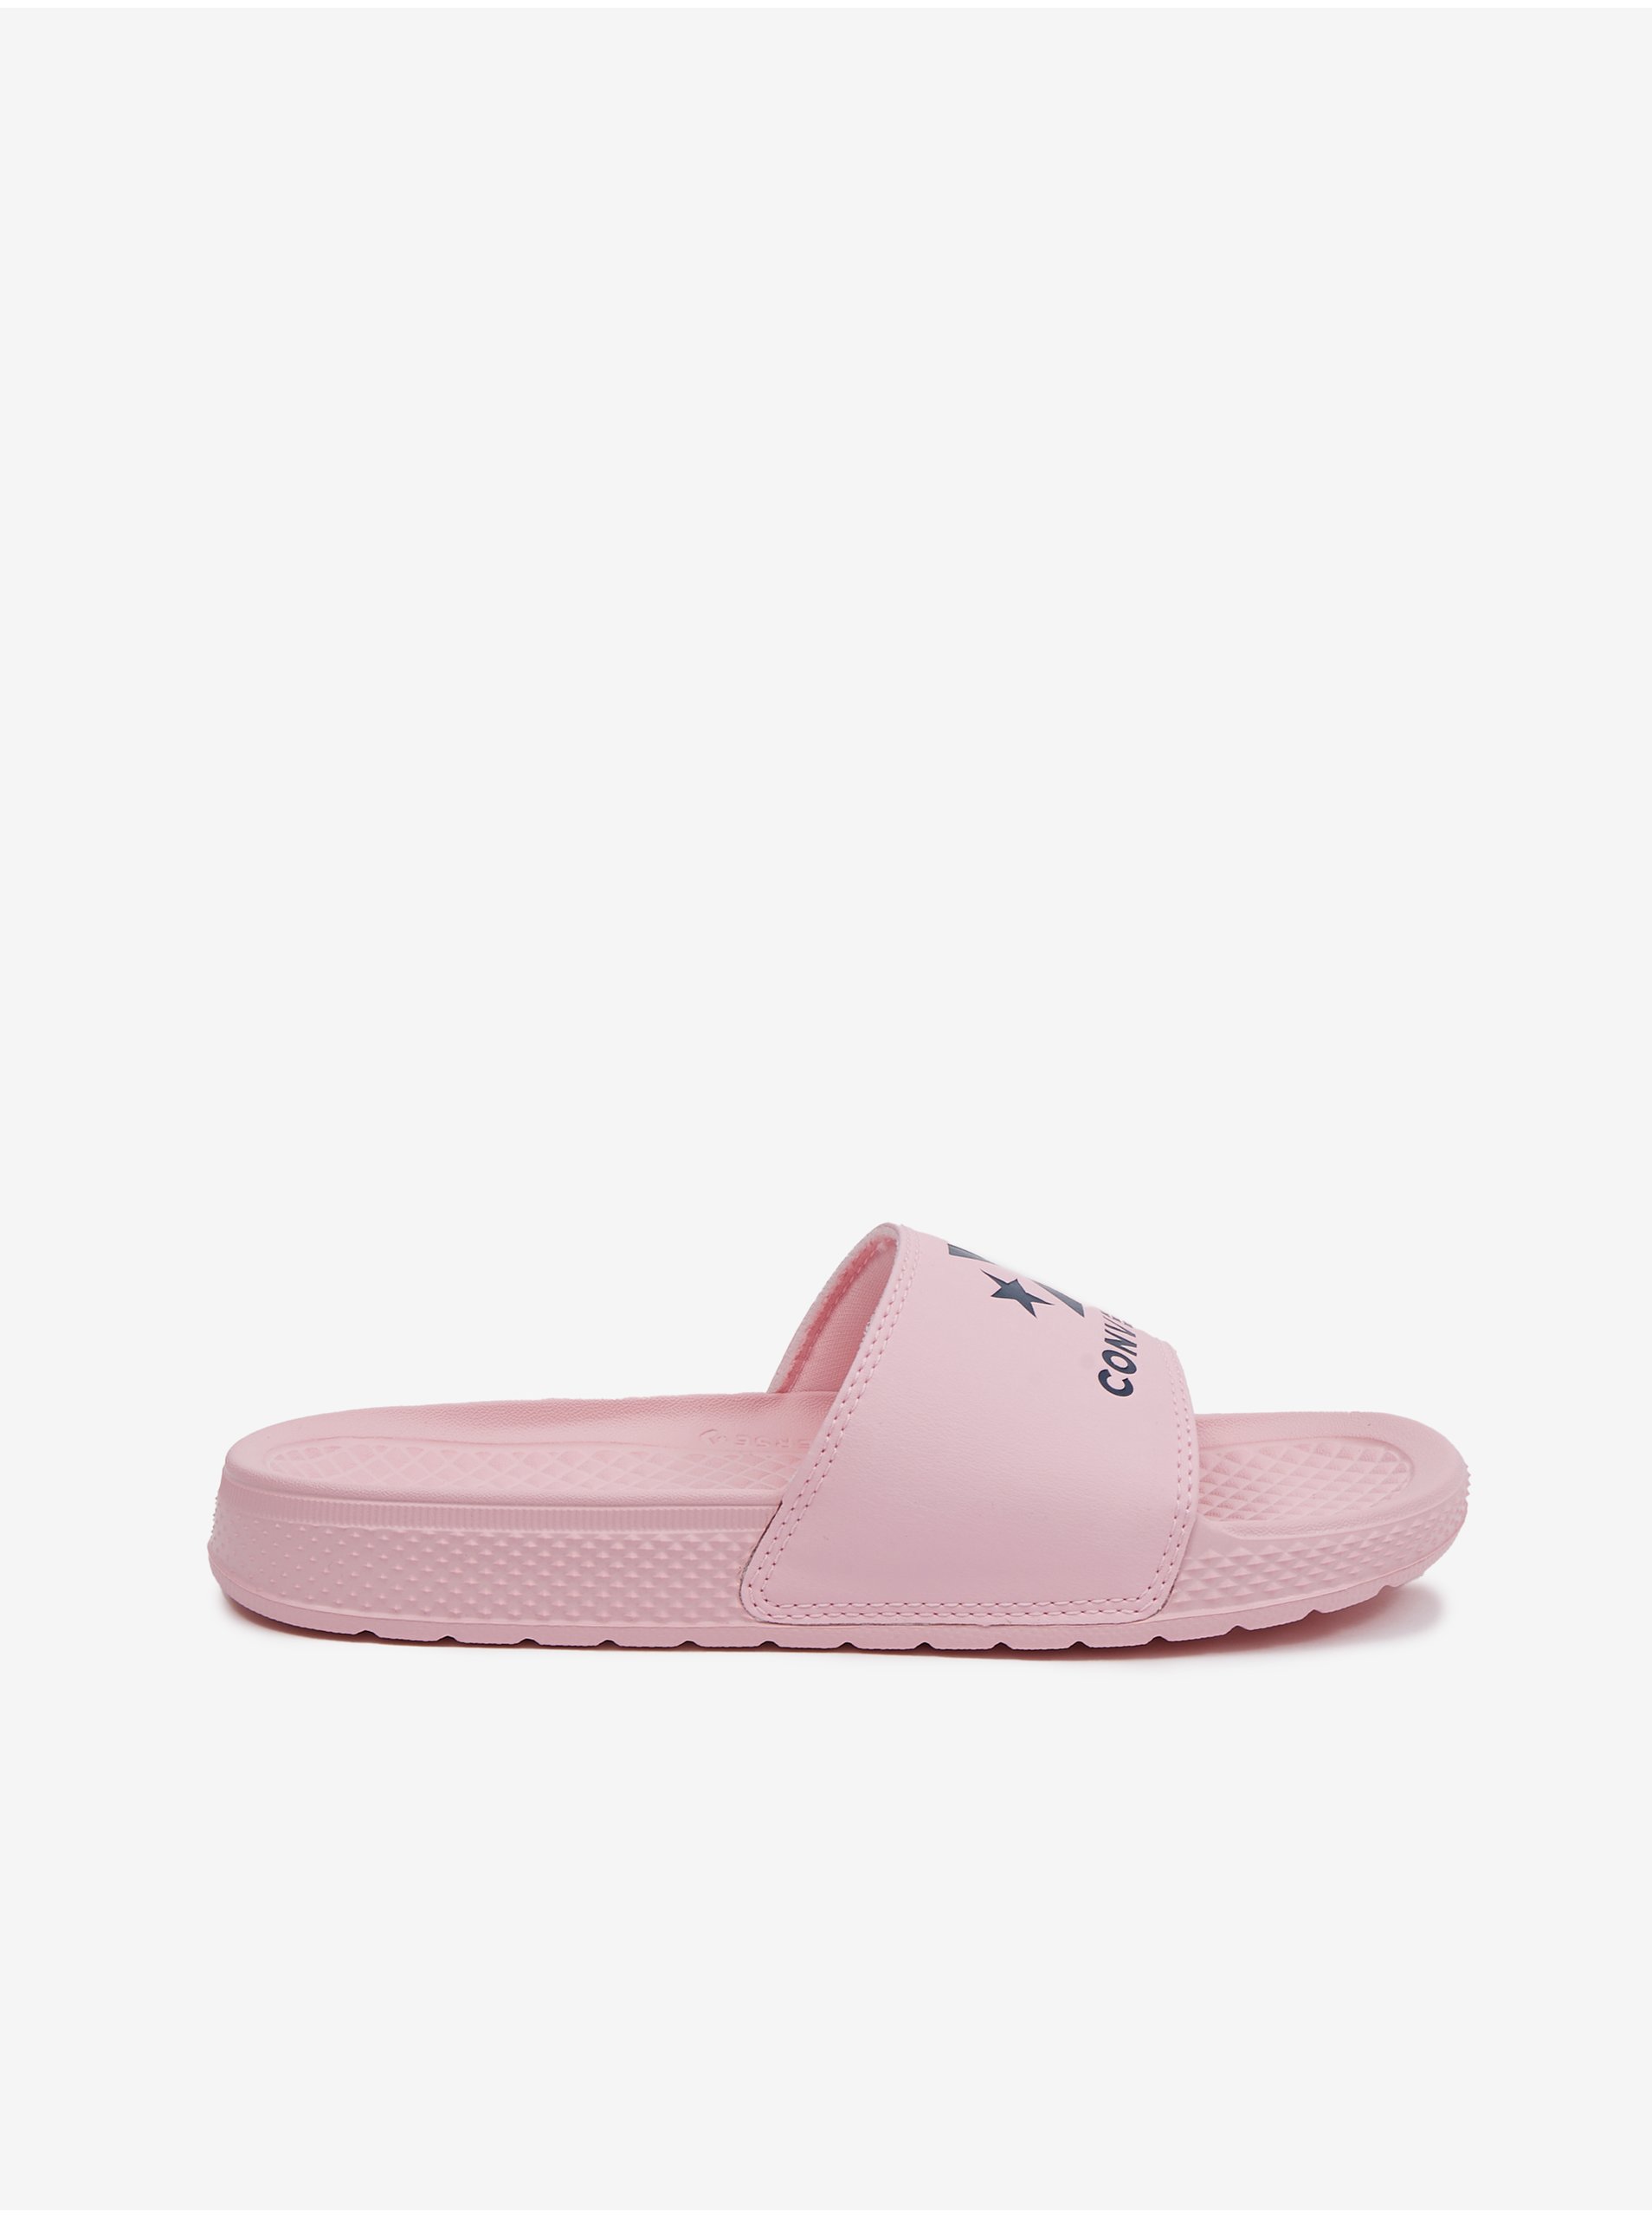 E-shop Světle růžové dámské pantofle Converse All Star Slide